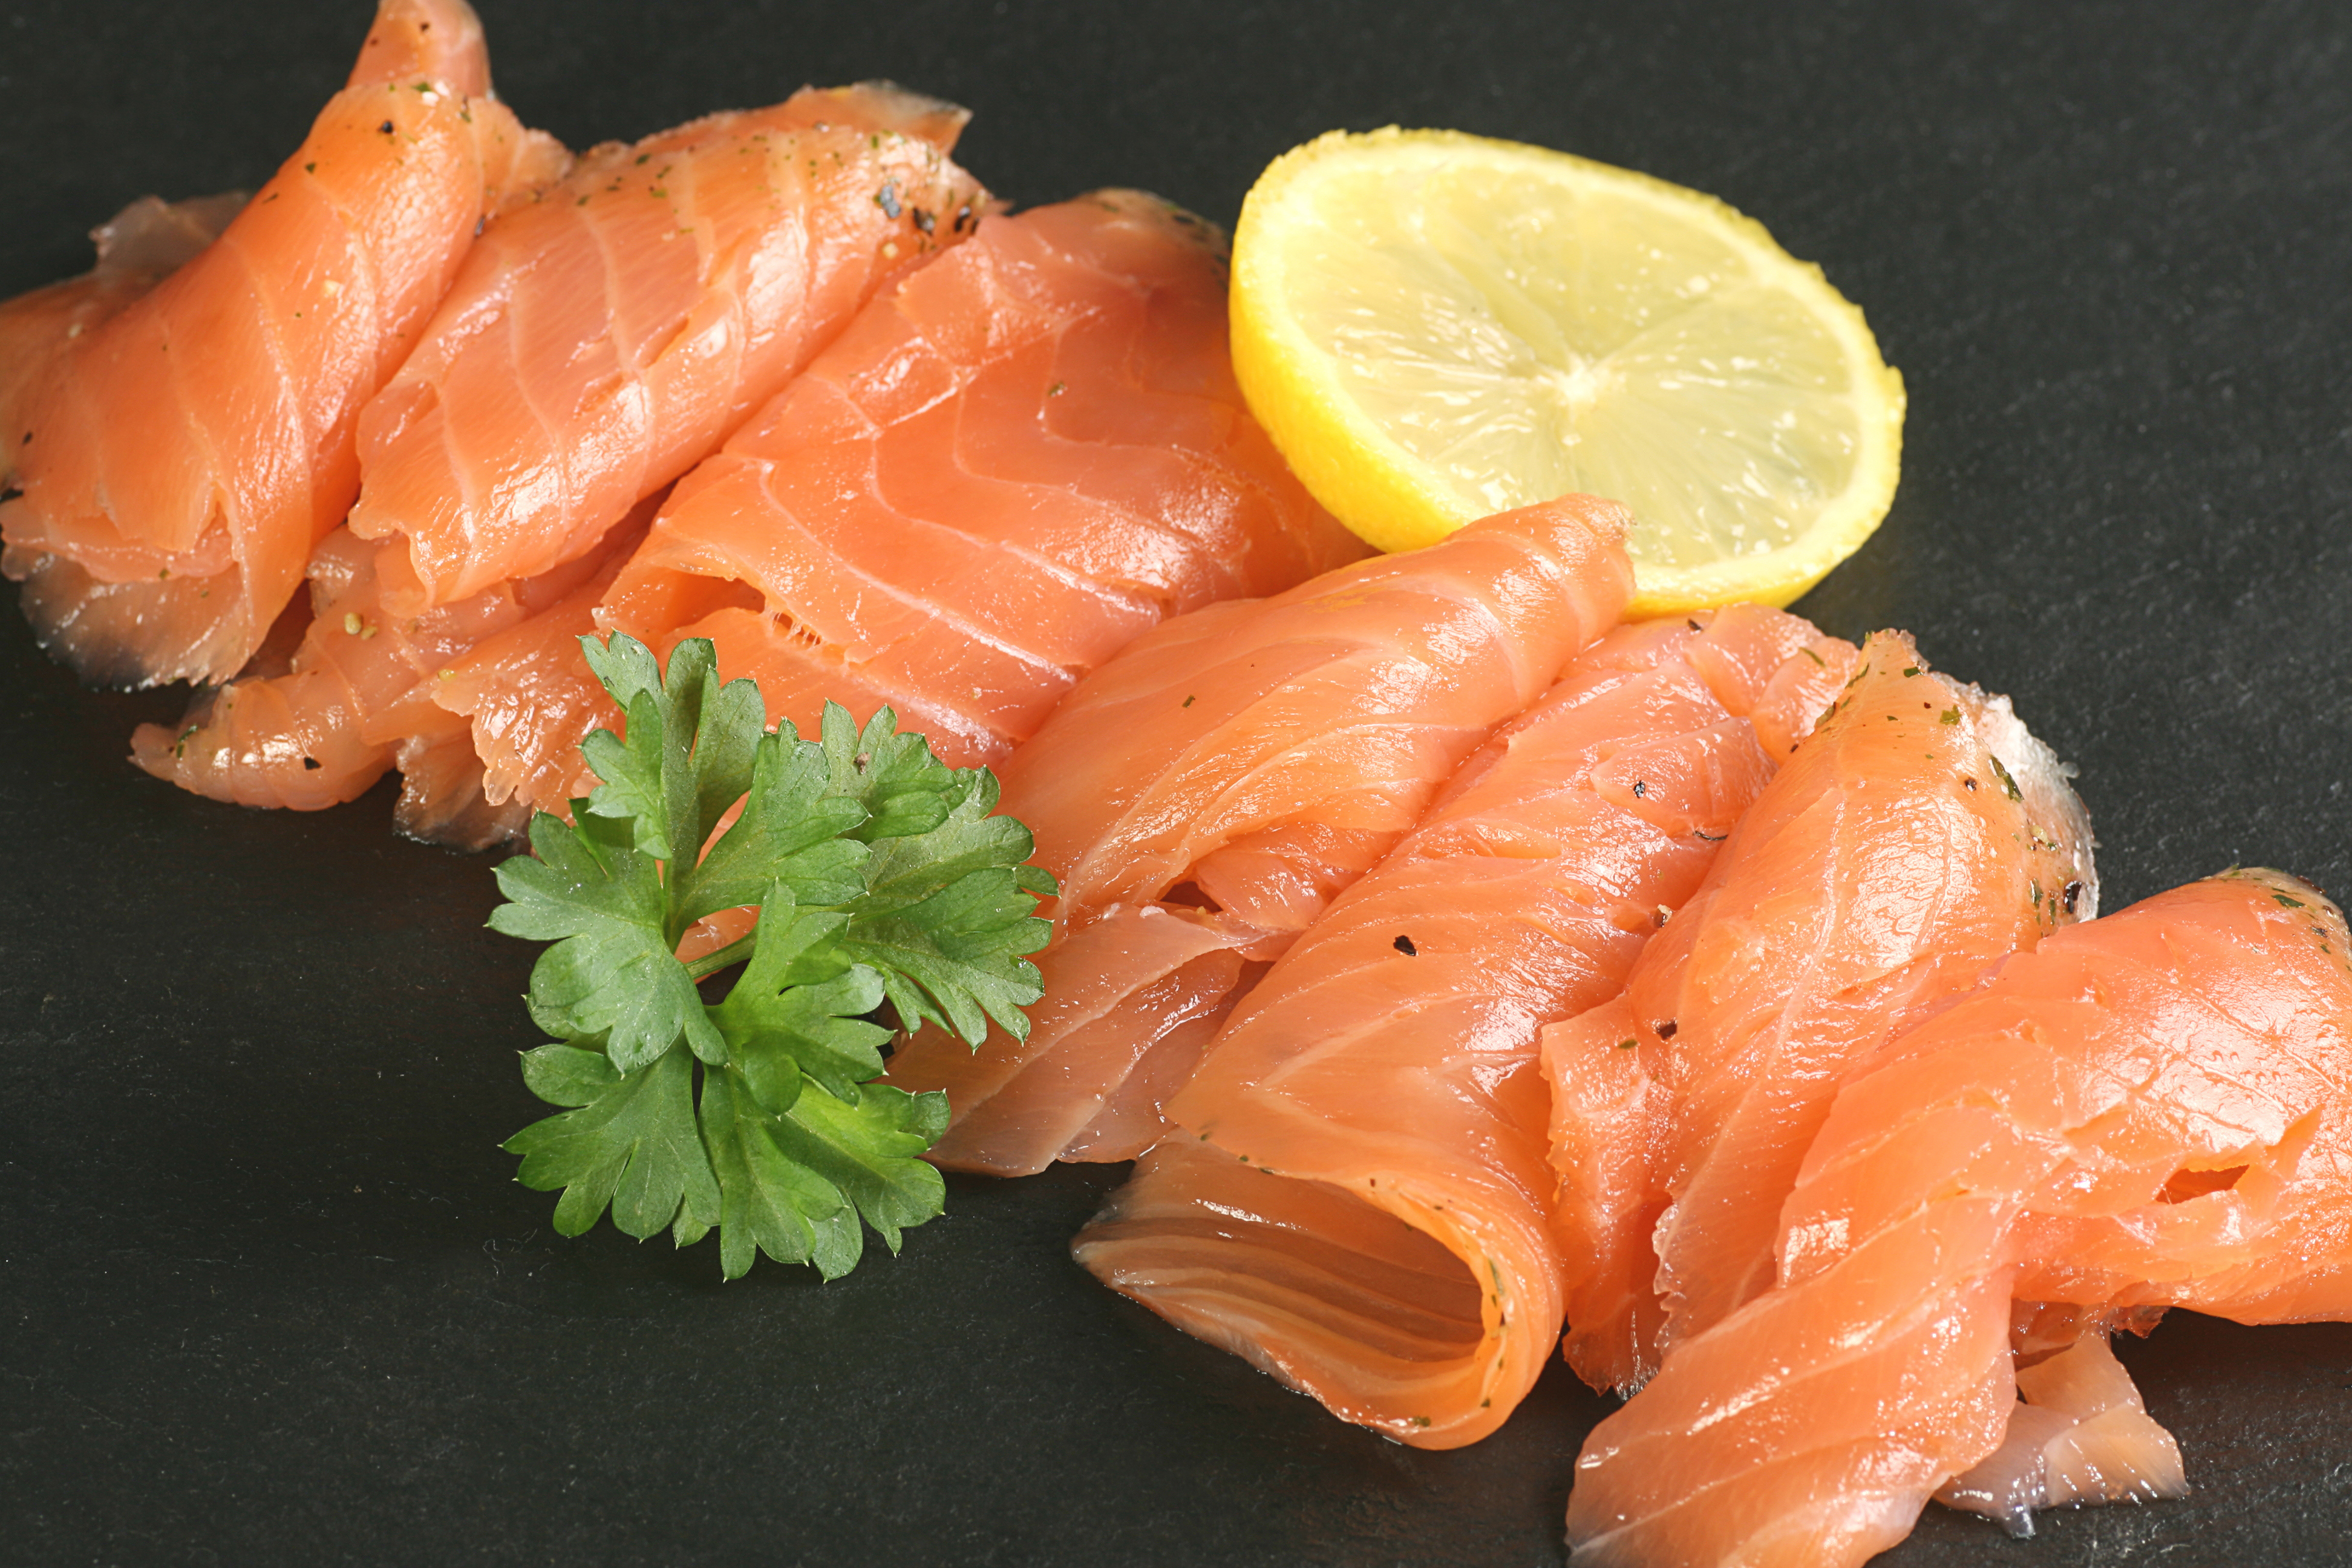 Foppen Seafood Recalls Smoked Salmon Due to Listeria Contamination